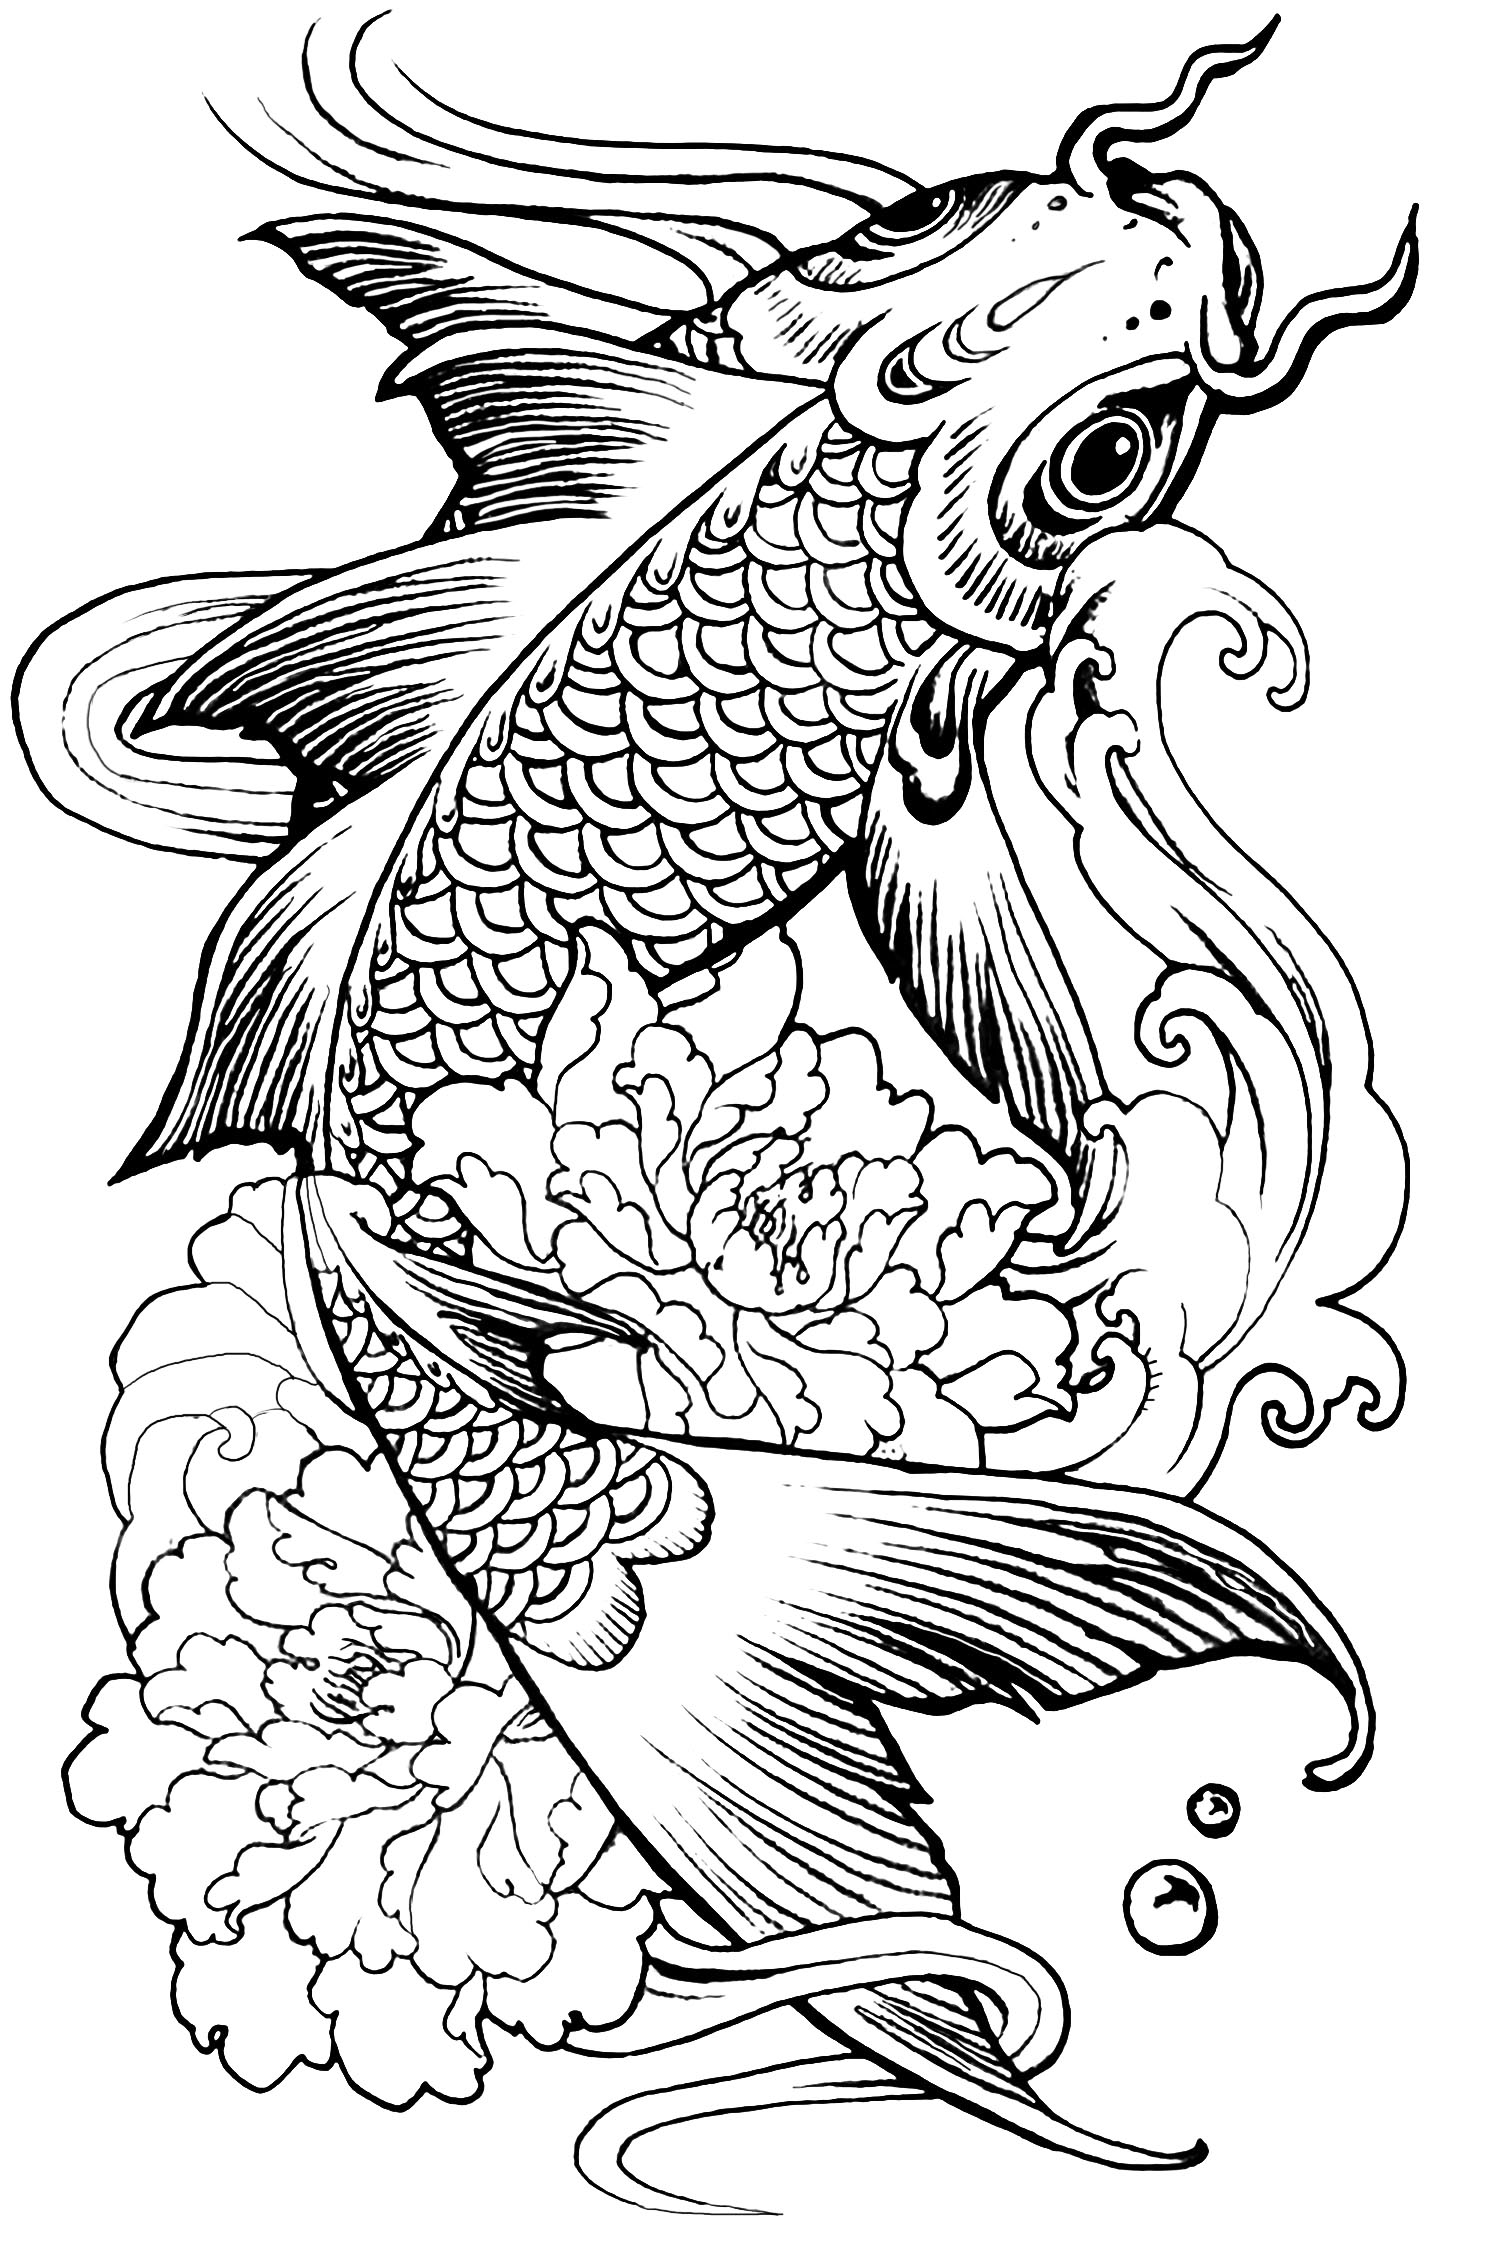 Un poisson à colorier (assez difficile)